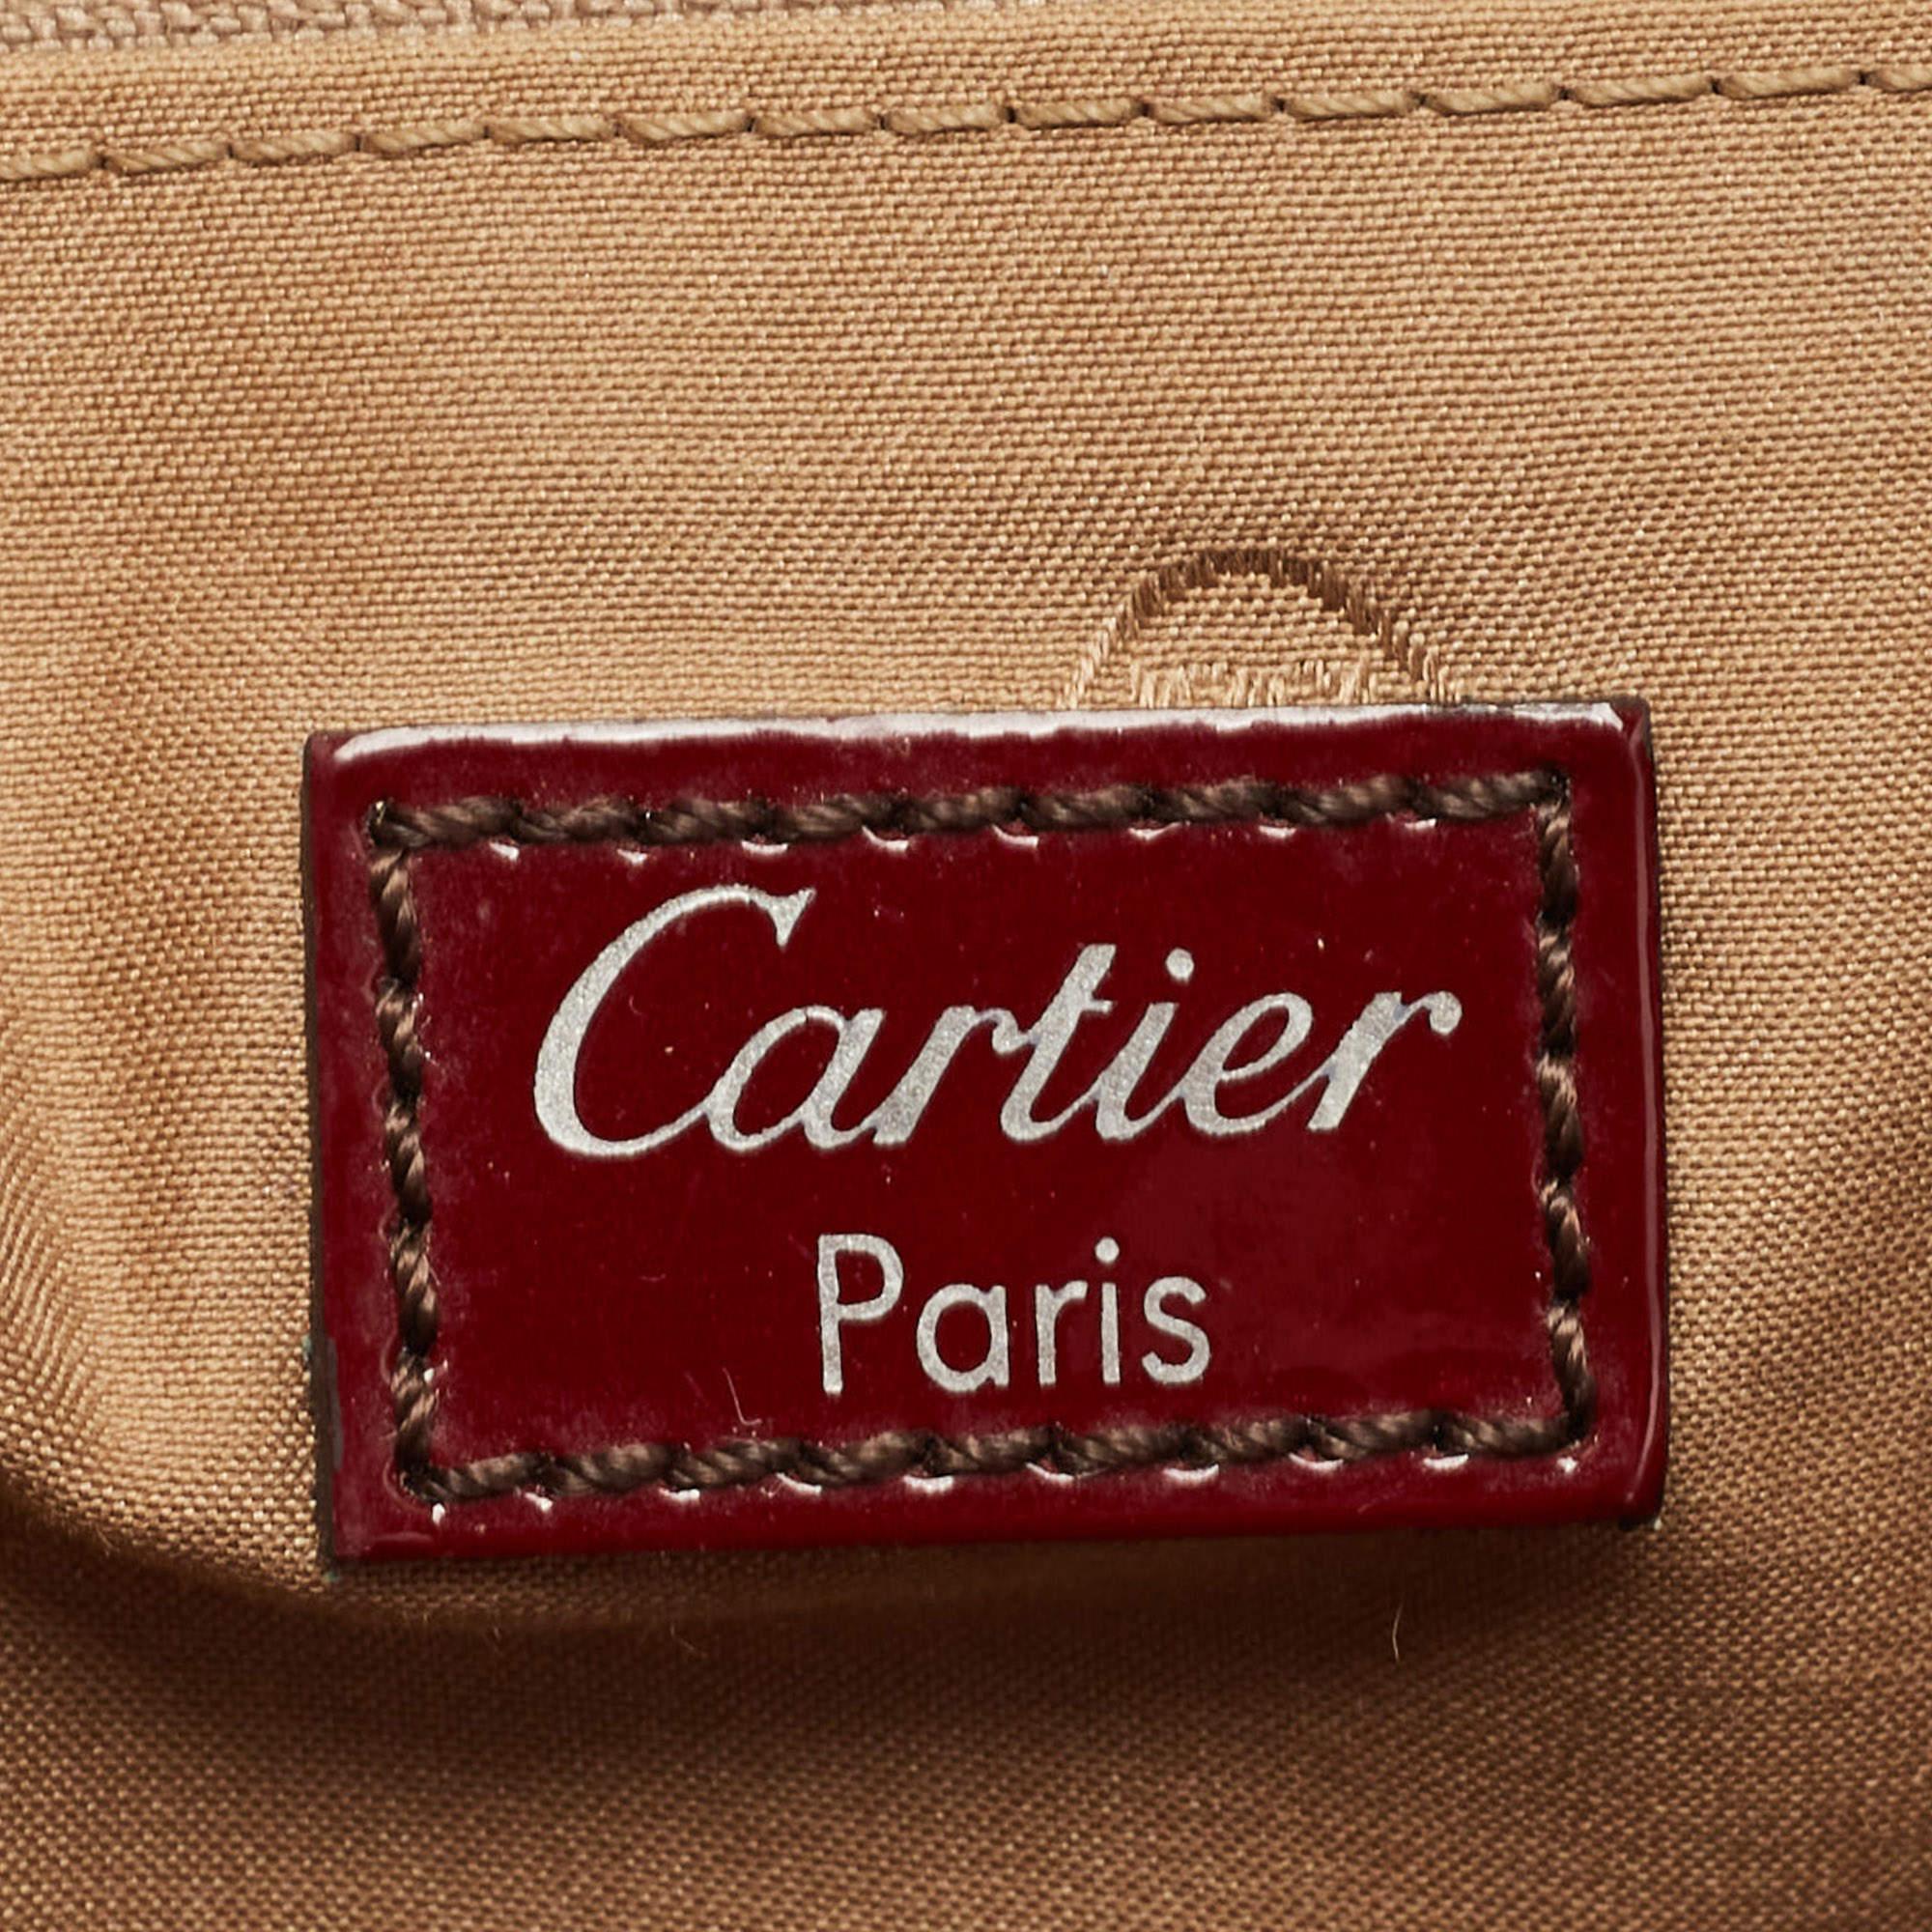 Cartier Burgundy Patent Leather Large Marcello de Cartier Bag 8